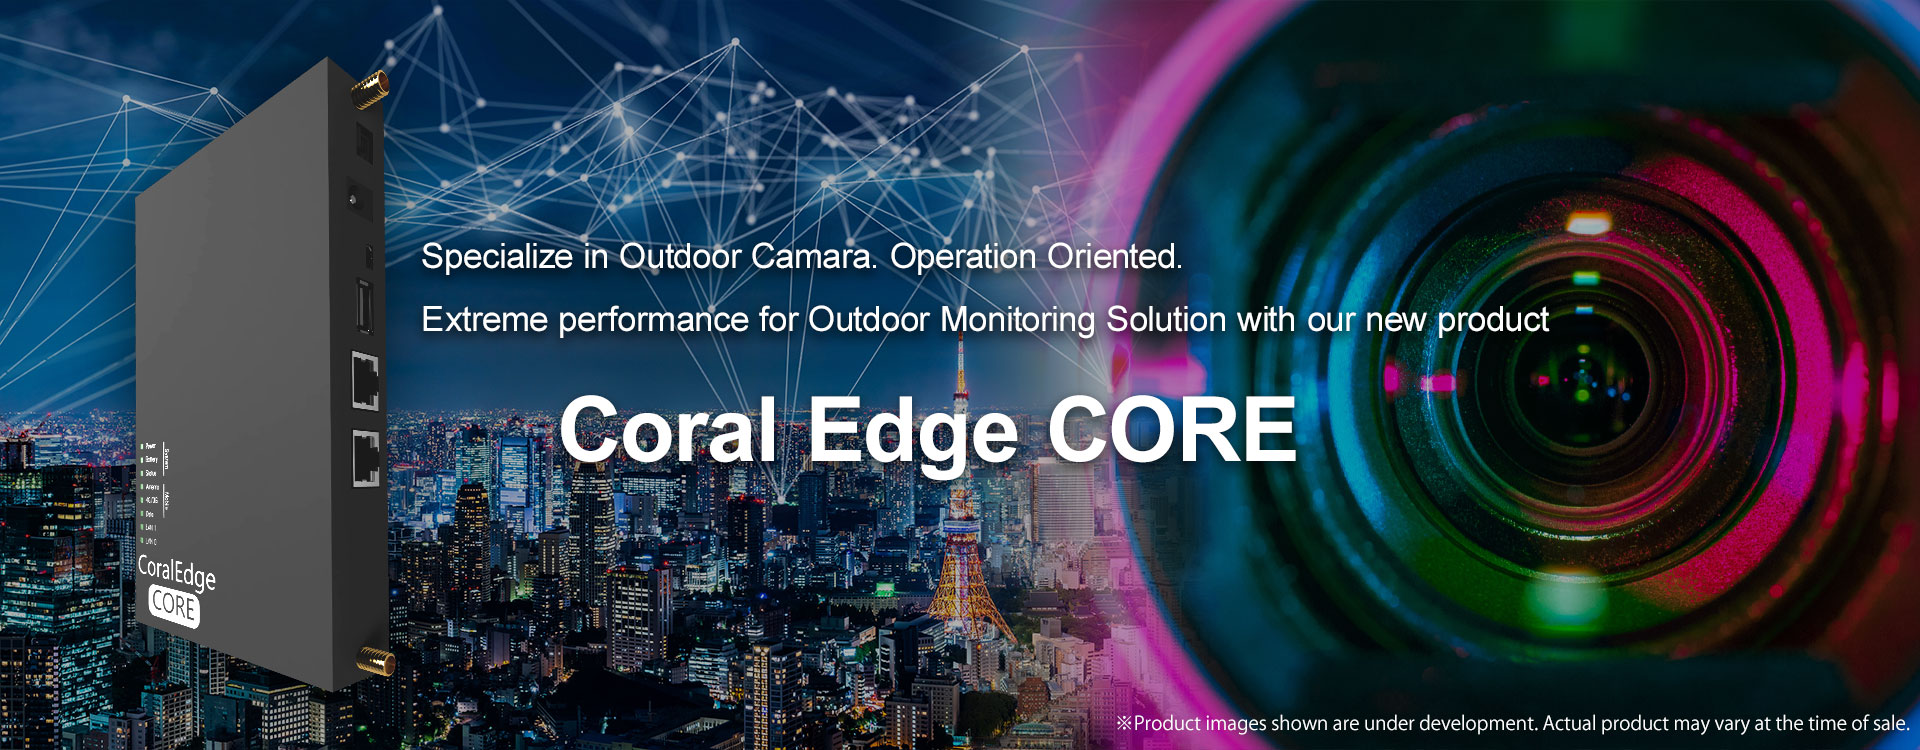 Coral Edge CORE